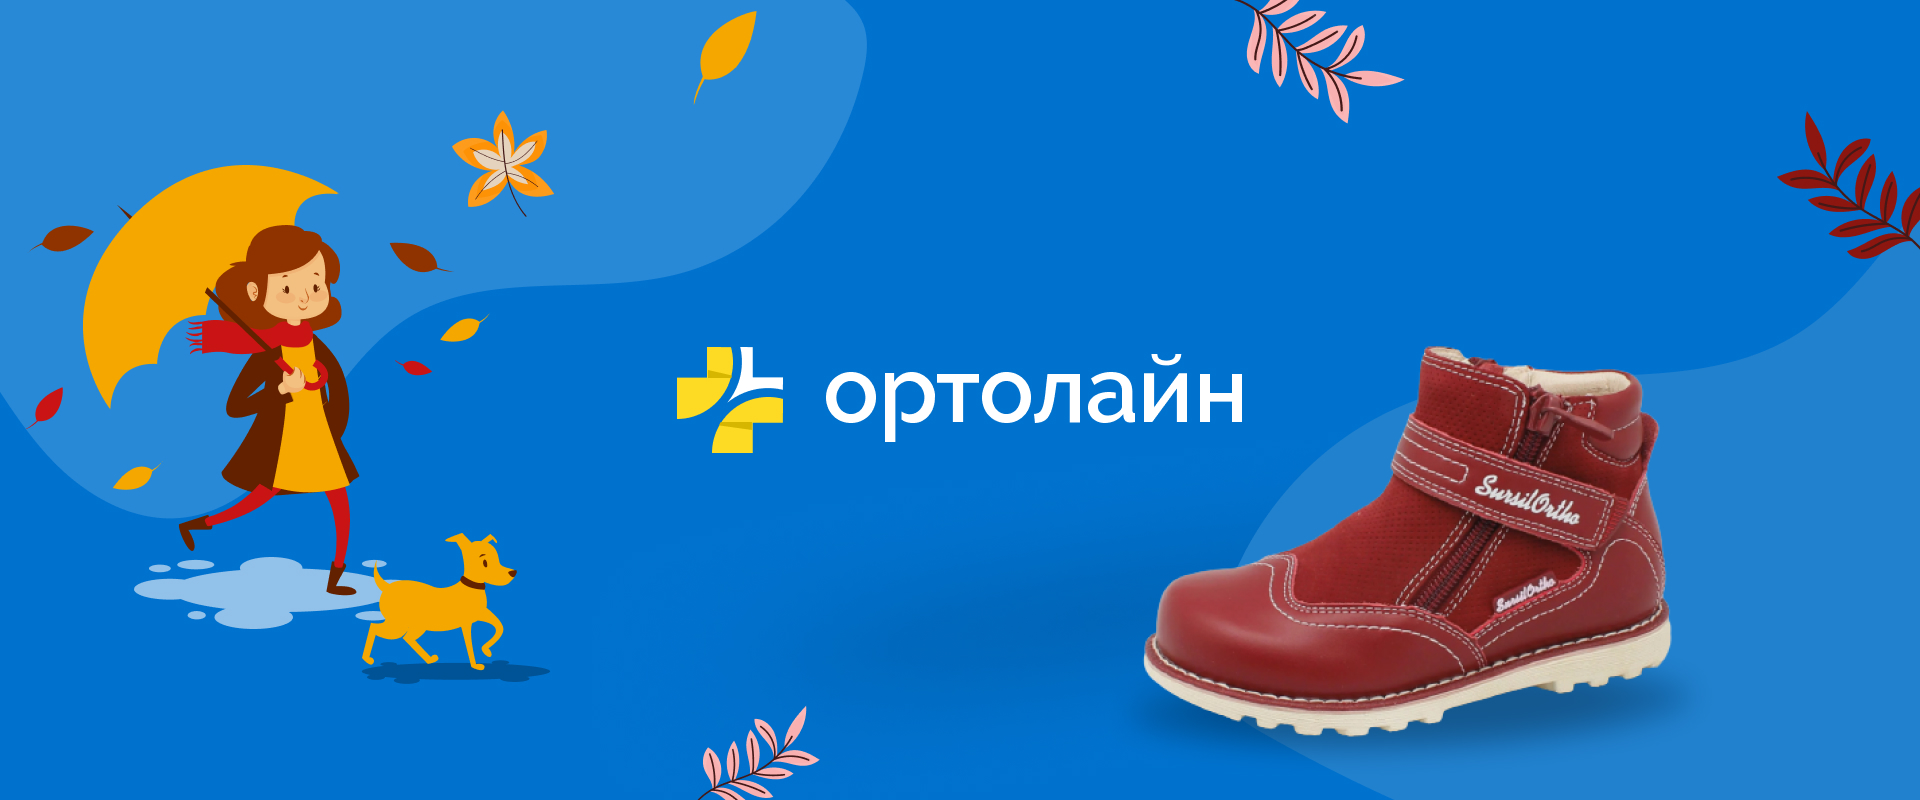 Ортолайн - крупнейший ортопедический магазин рунета